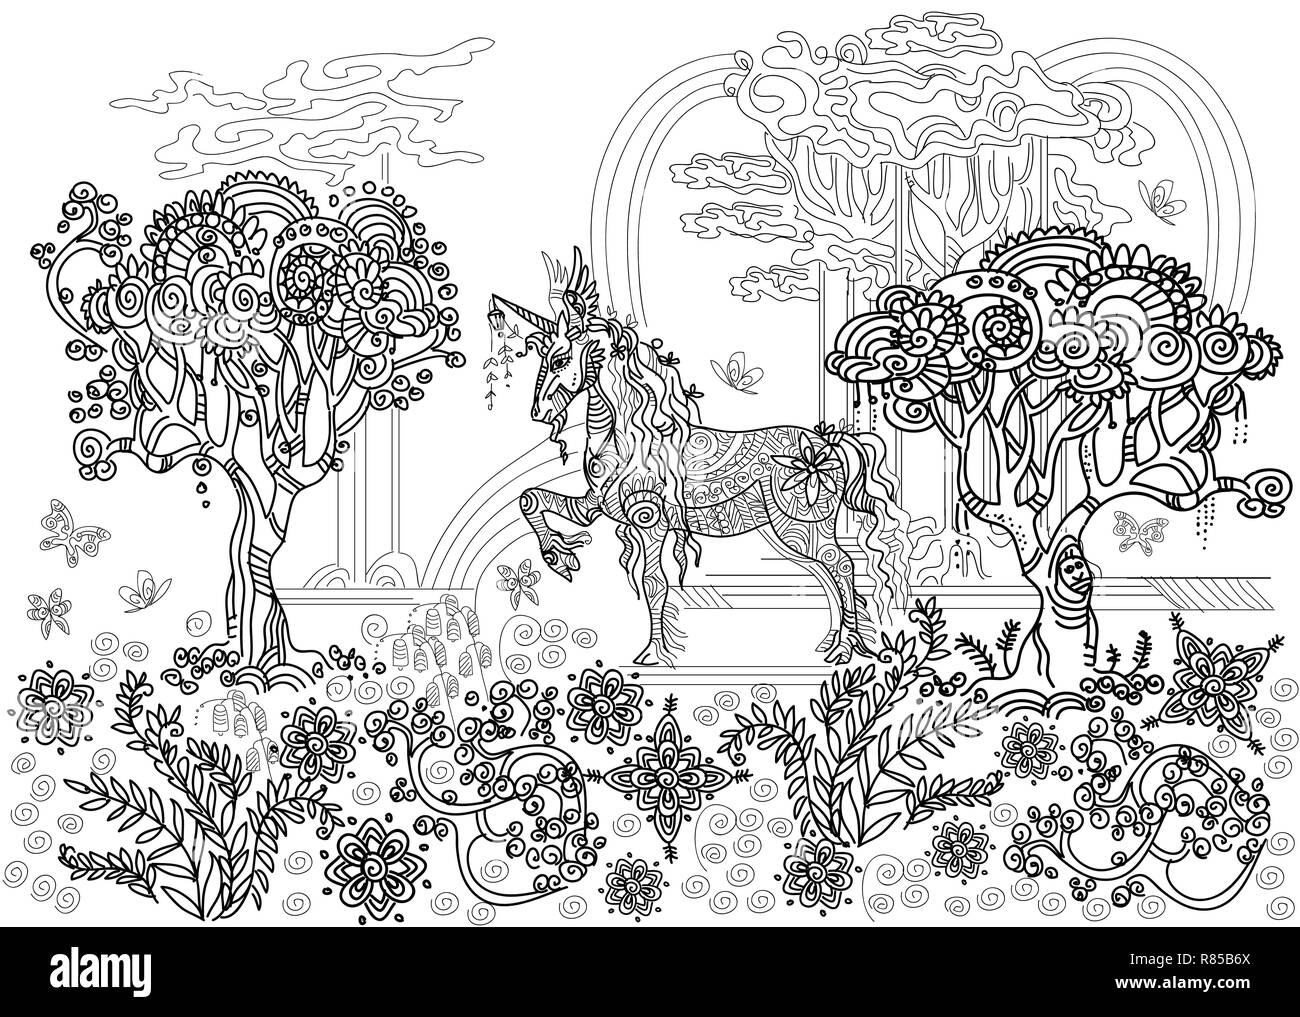 Vettore di disegno a mano illustrazione zentangle unicorn in colore nero isolato su sfondo bianco. Doodle unicorn illustrazione con elementi d'impianto. Colore Illustrazione Vettoriale